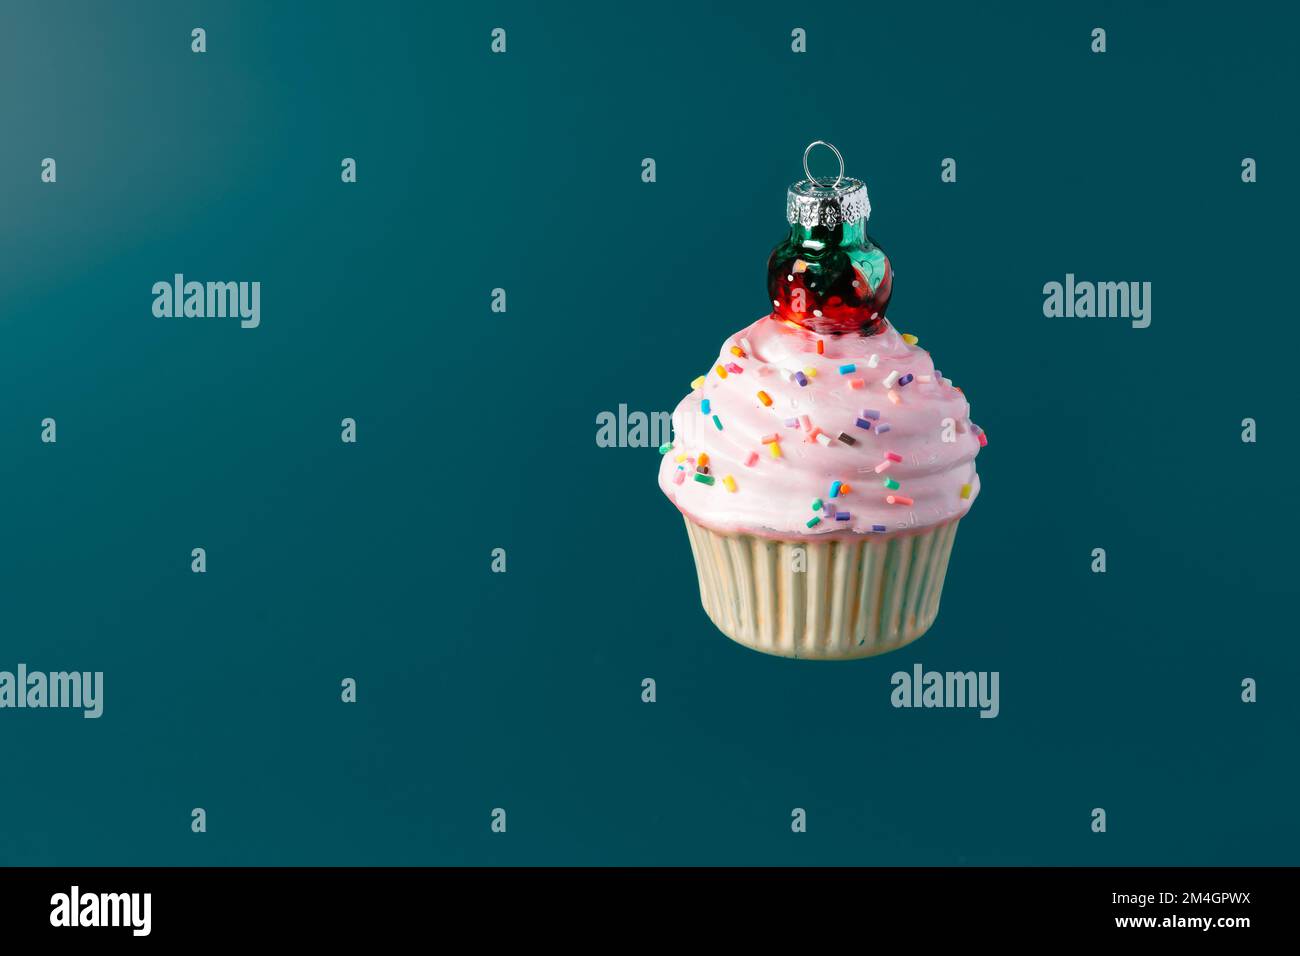 Natale dolce cupcake abbauble su sfondo verde scuro Foto Stock